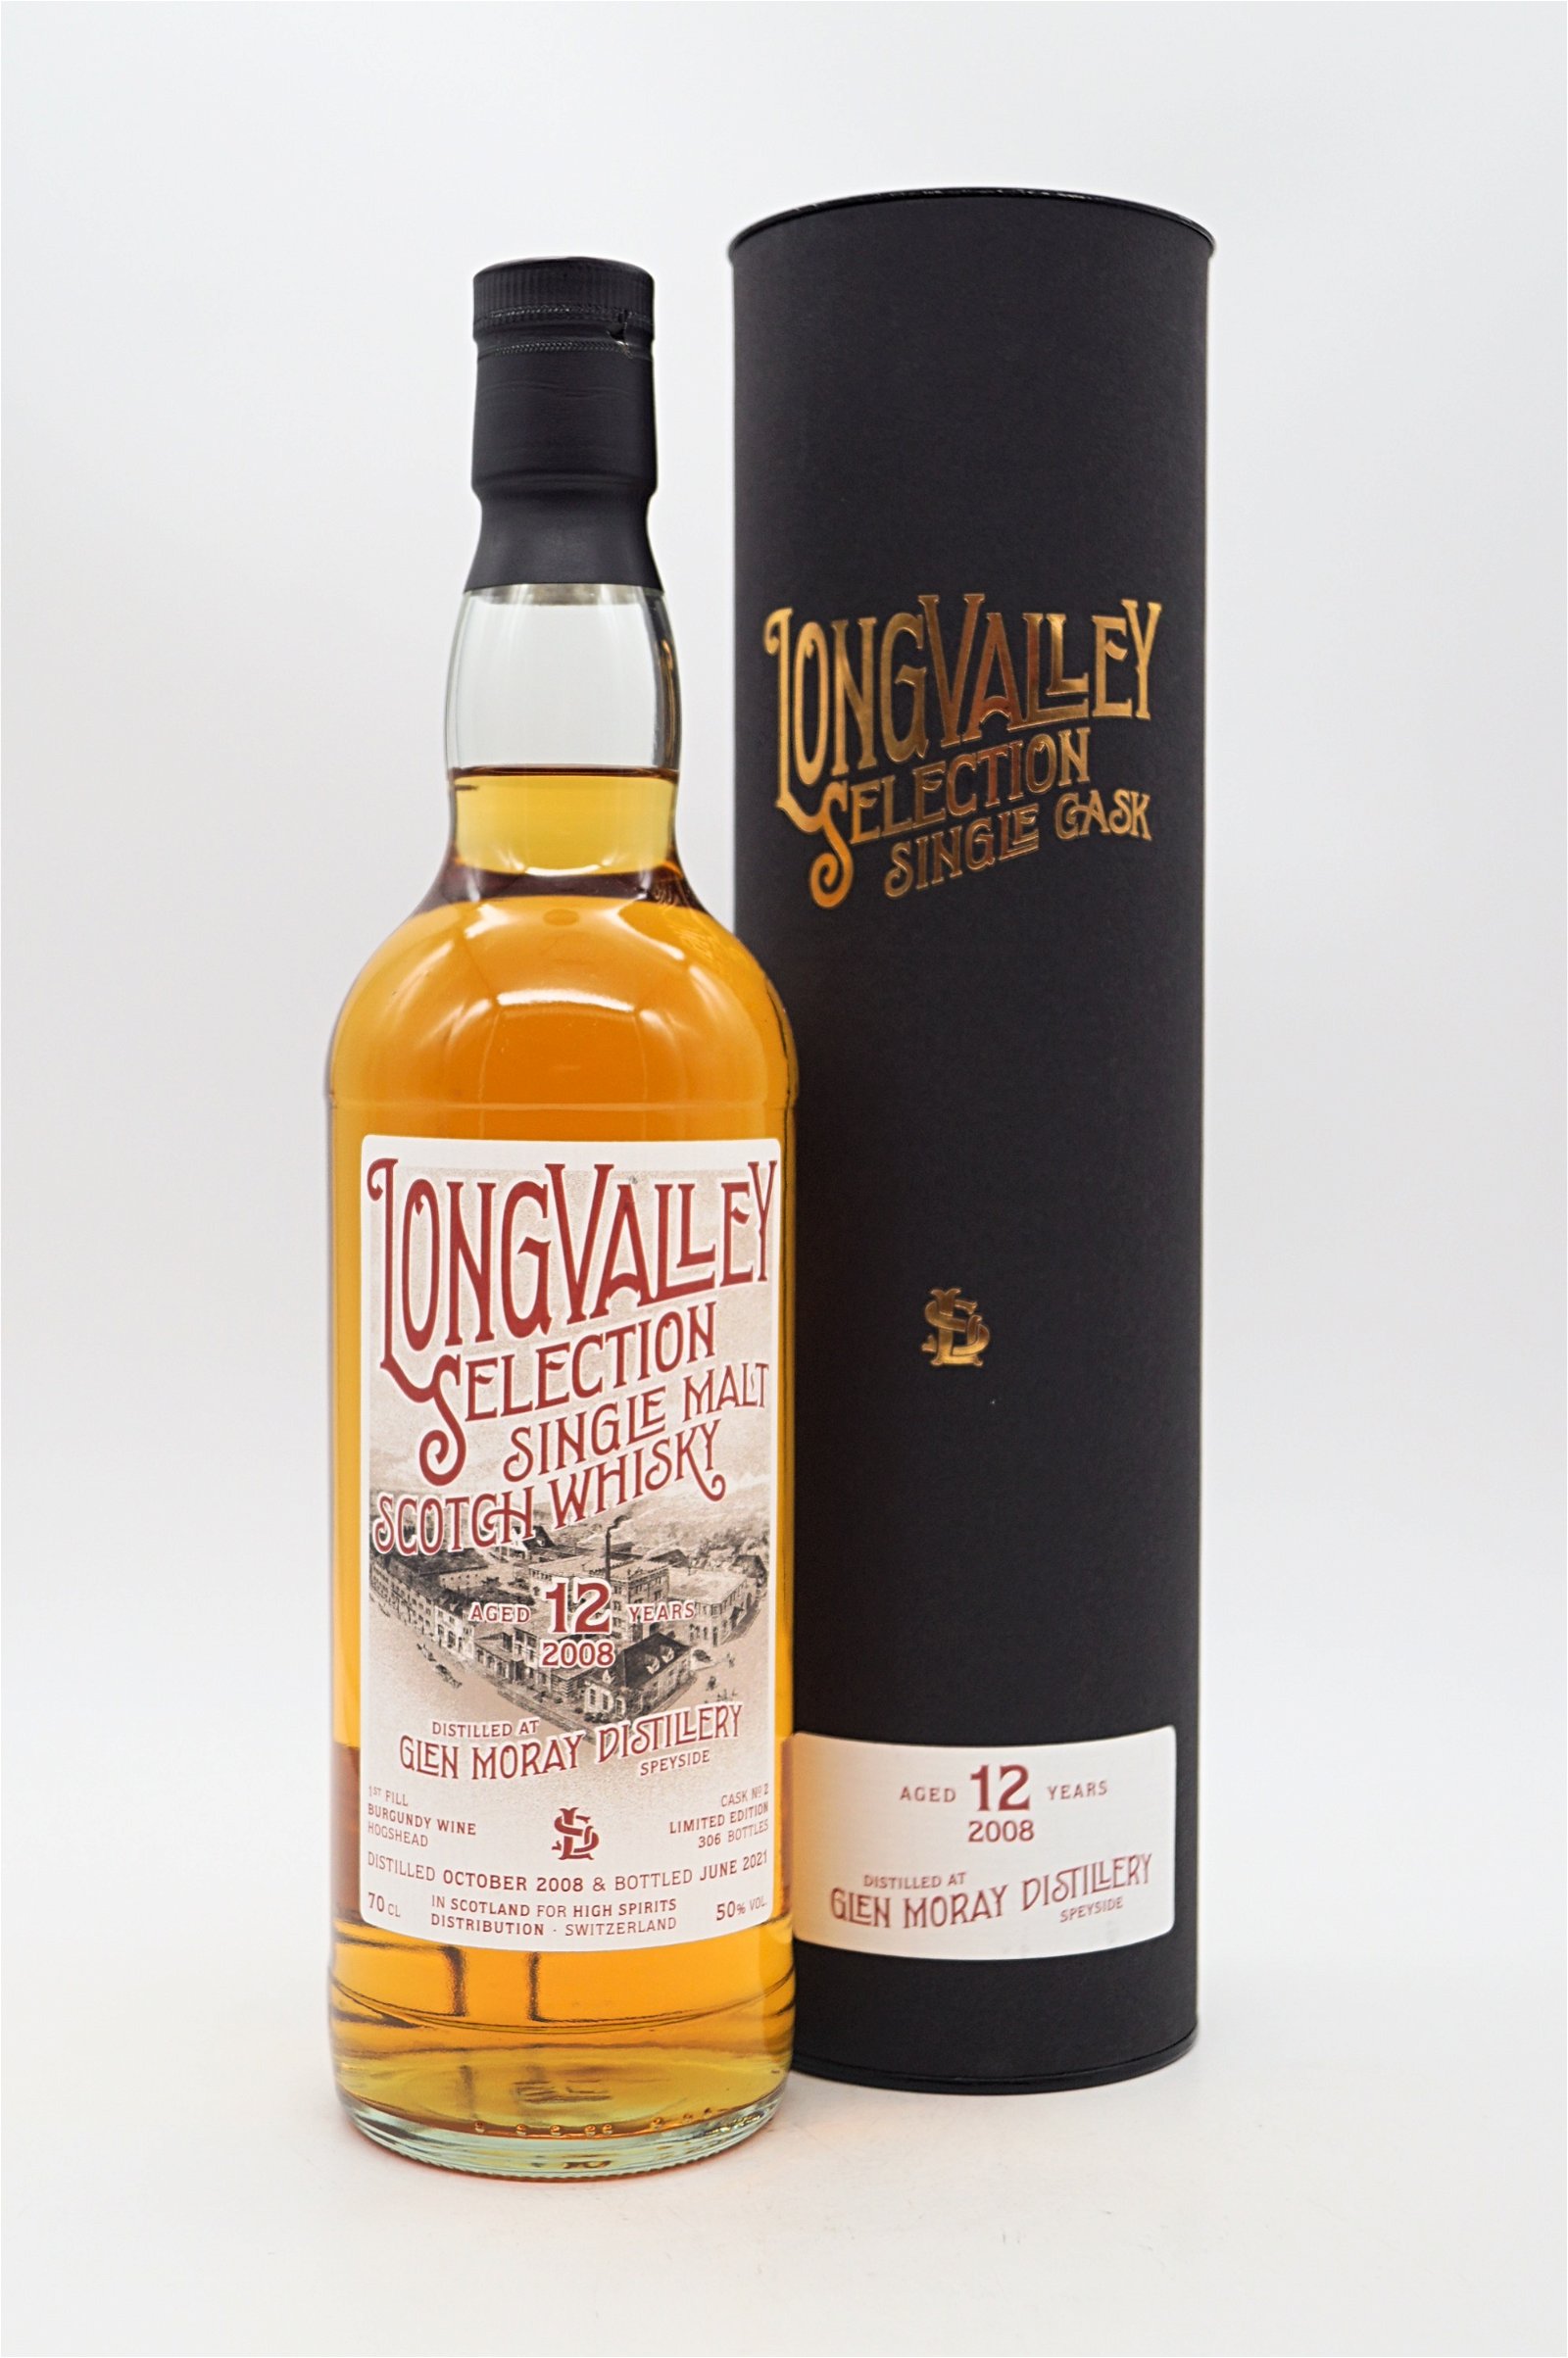 LongValley Selection Glen Moray 12 Jahre First Fill Burgundy Wine Cask Single Malt Scotch Whisky